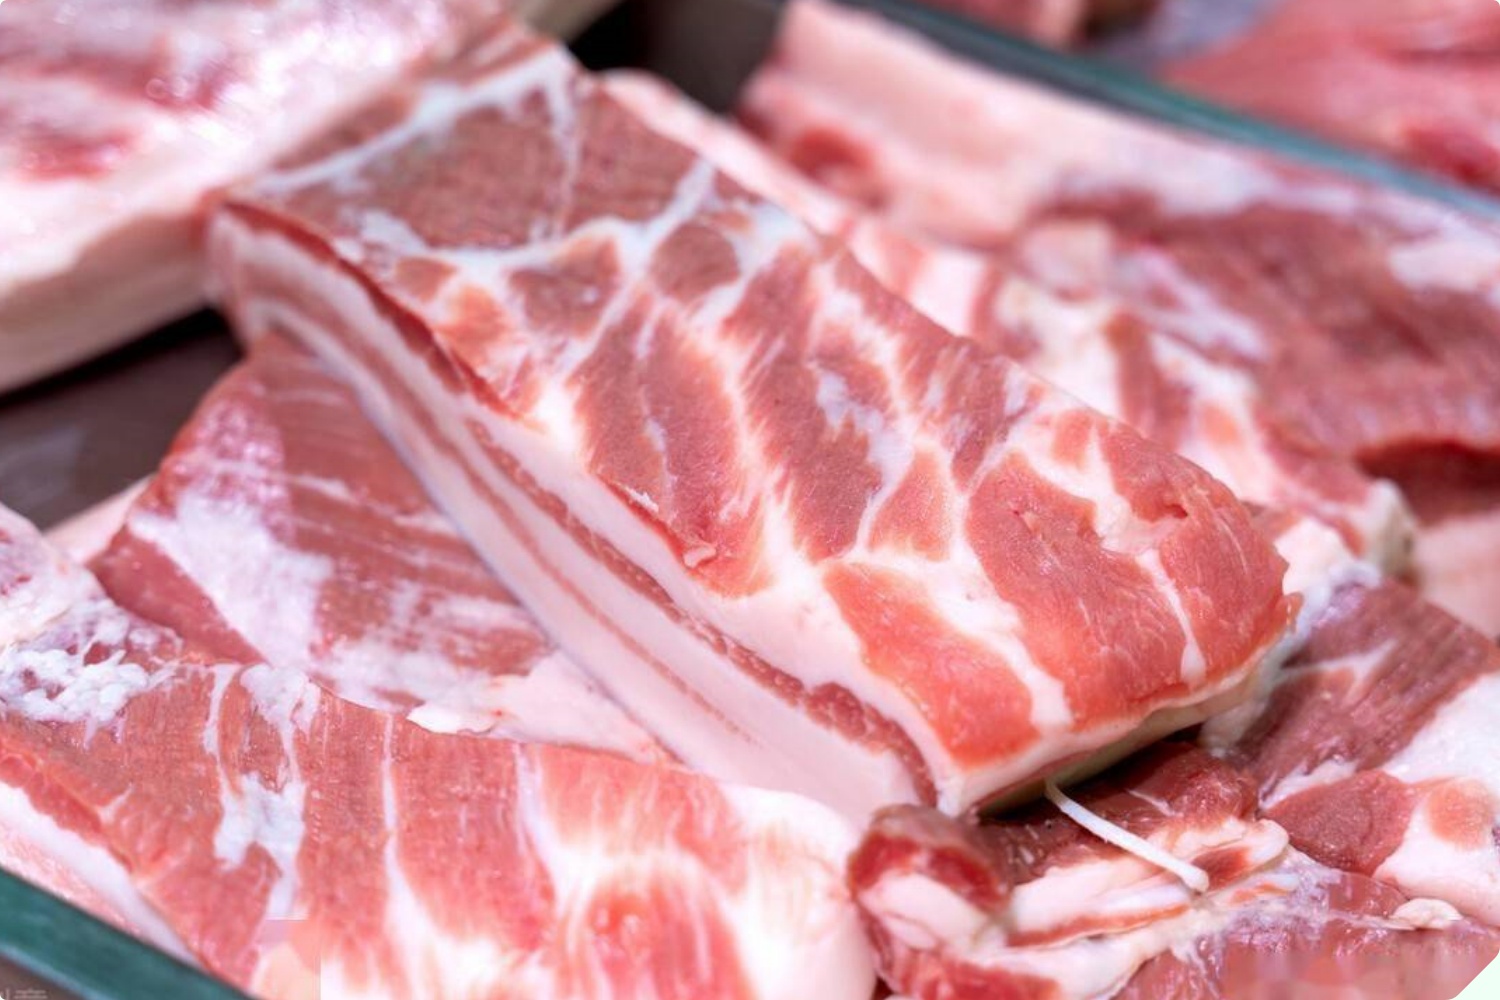 Mua thịt lợn nên chọn miếng sẫm hay nhạt màu? Cứ nhìn kỹ 3 điểm, người bán thịt tài mấy cũng không lừa được bạn - 6